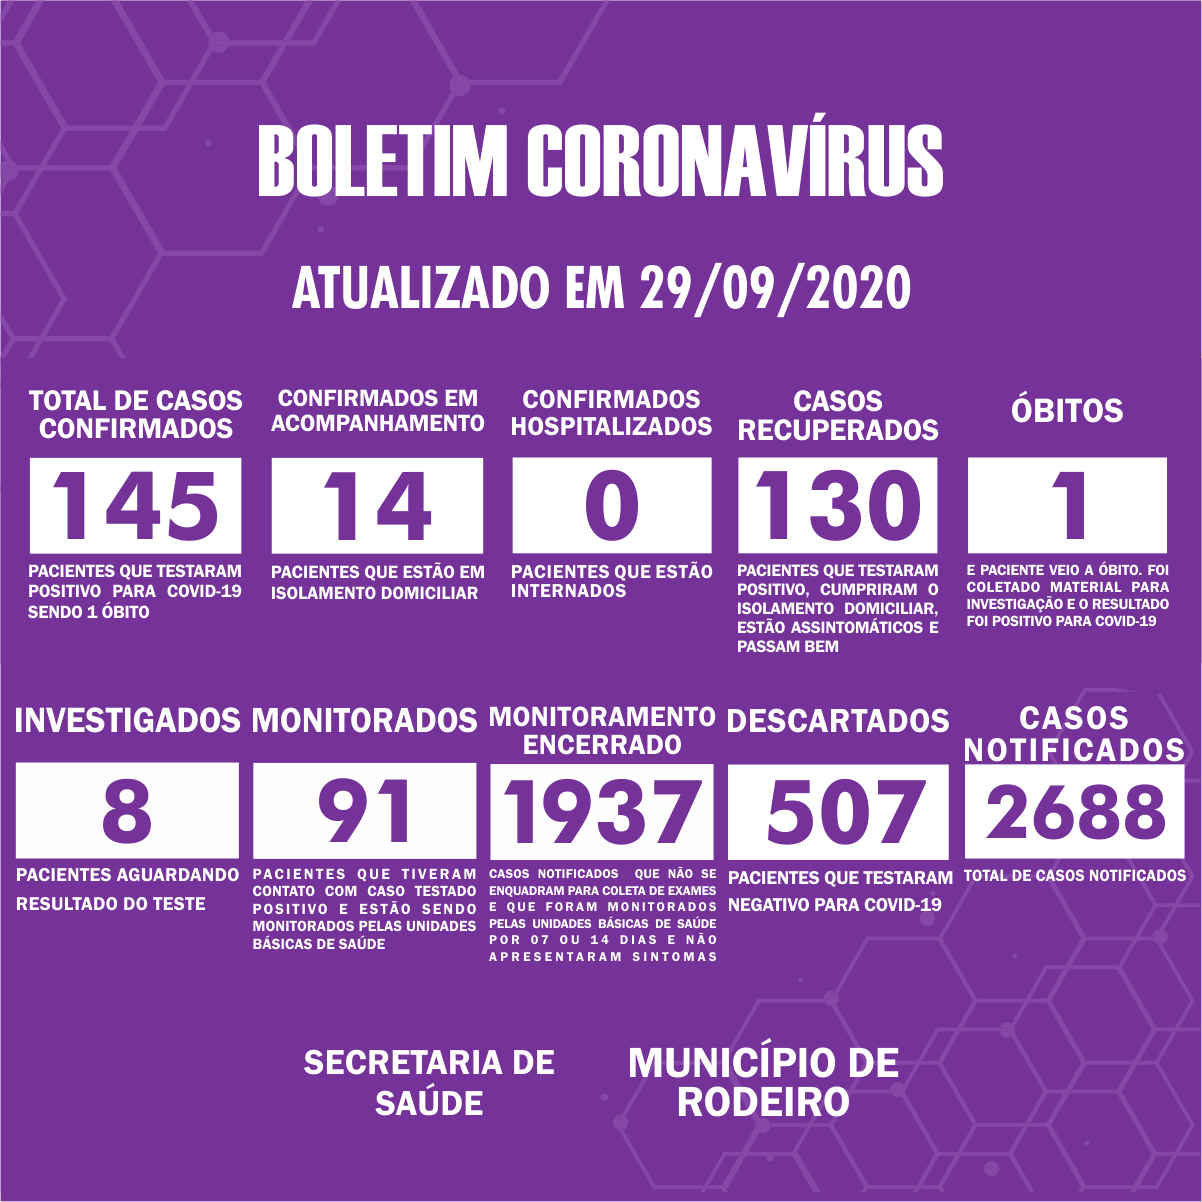 Boletim Epidemiológico do Município de Rodeiro sobre coronavírus, atualizado em 29/09/2020